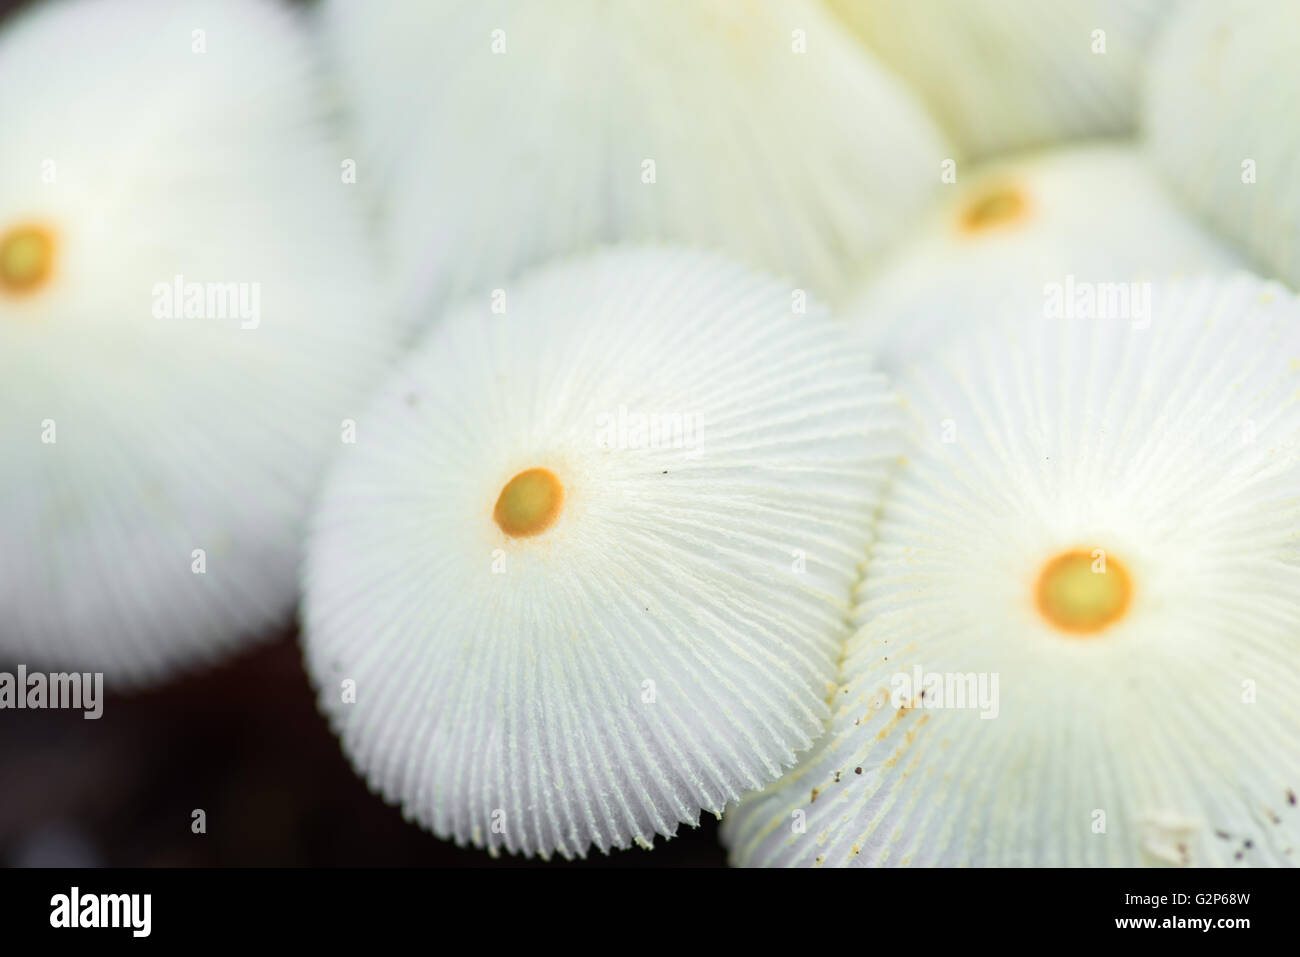 Vue rapprochée d'un groupe de champignons sauvages parapluie blanc avec une tache jaune au milieu Banque D'Images